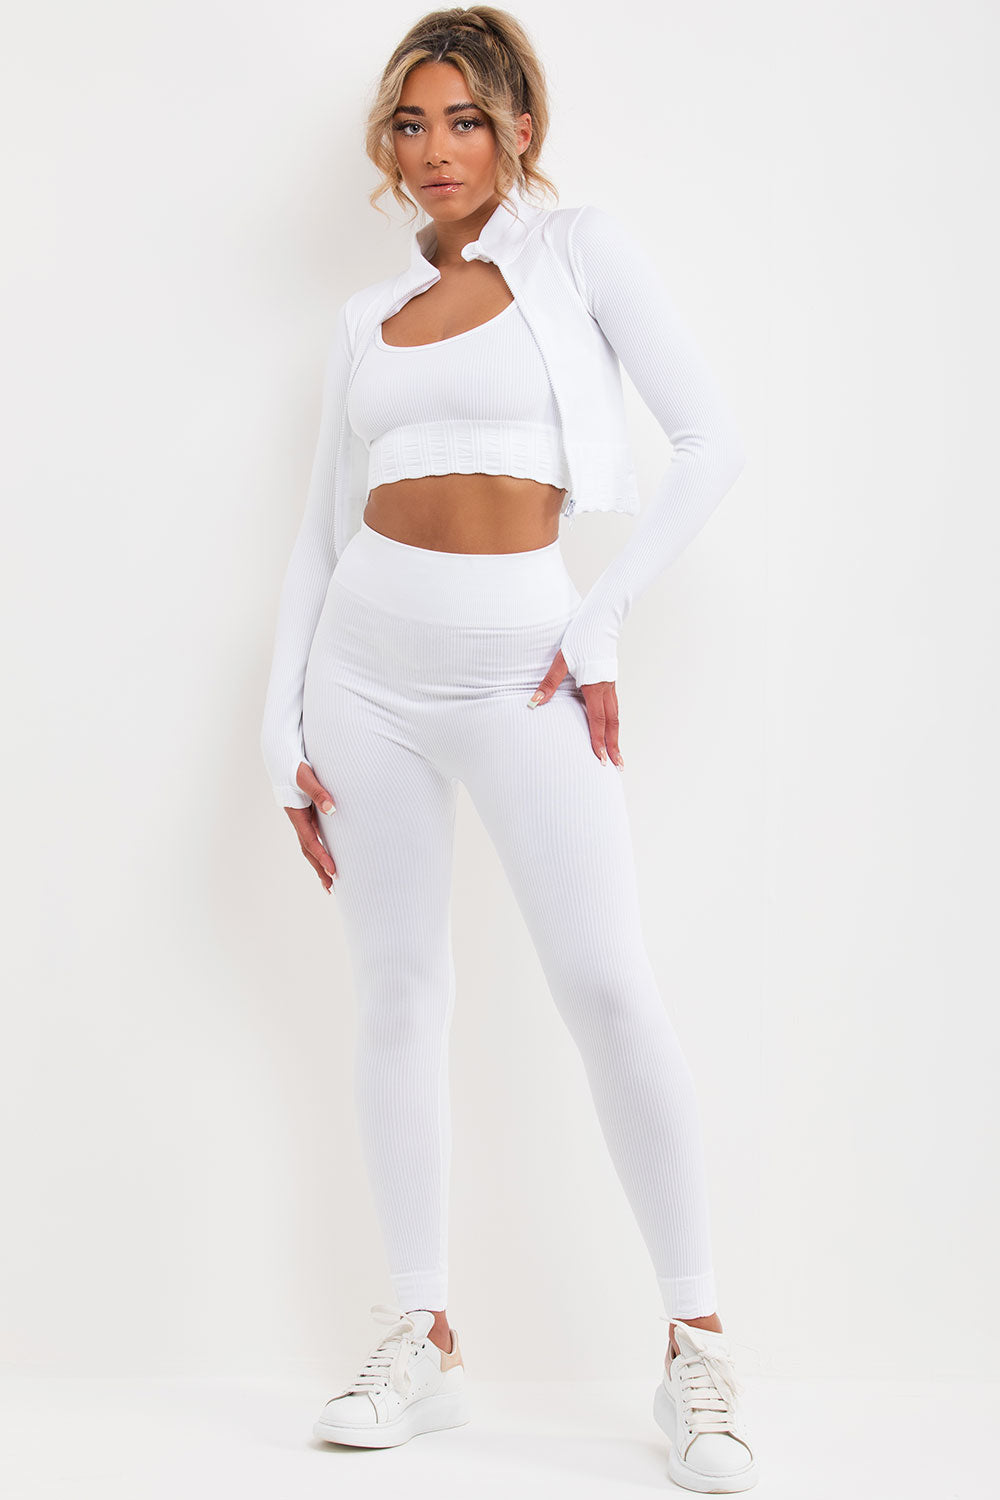 White Activewear Set - Yoga Clothing UK – The Positive Company